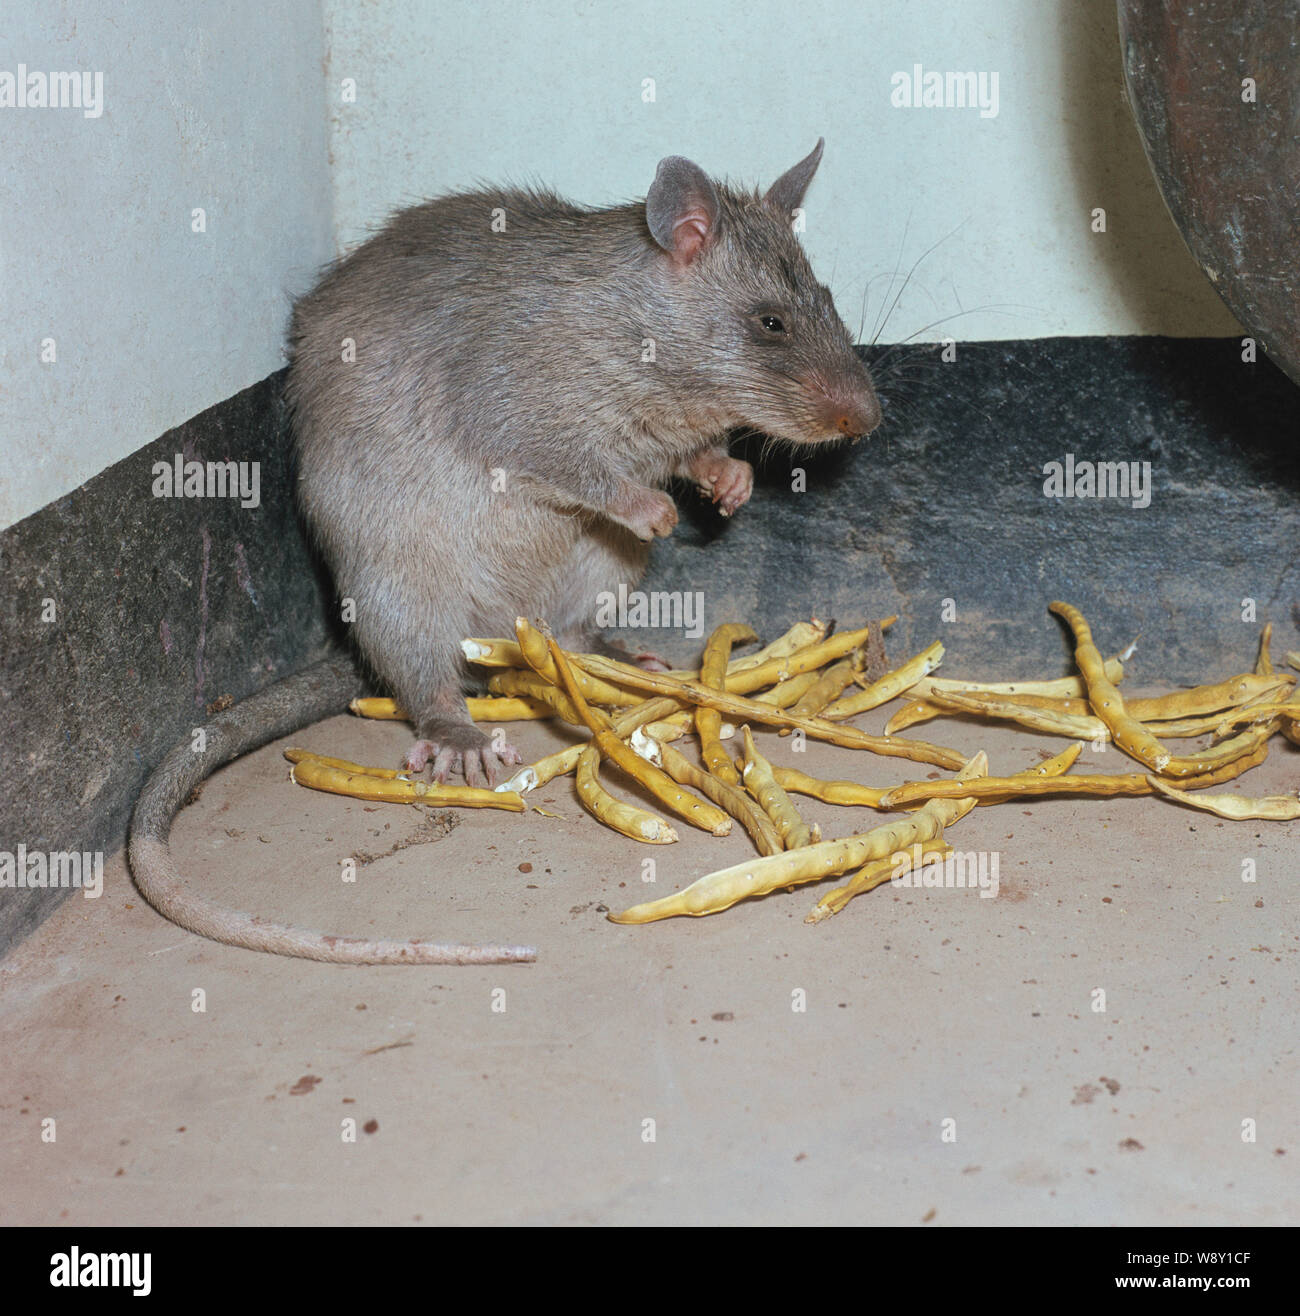 Gambische riesigen POUCHED RATTE (Cricetomys gambianus). In Nigeria fotografiert. Gehalten und gezüchtet als Nahrungsquelle in einigen afrikanischen Ländern. Stockfoto